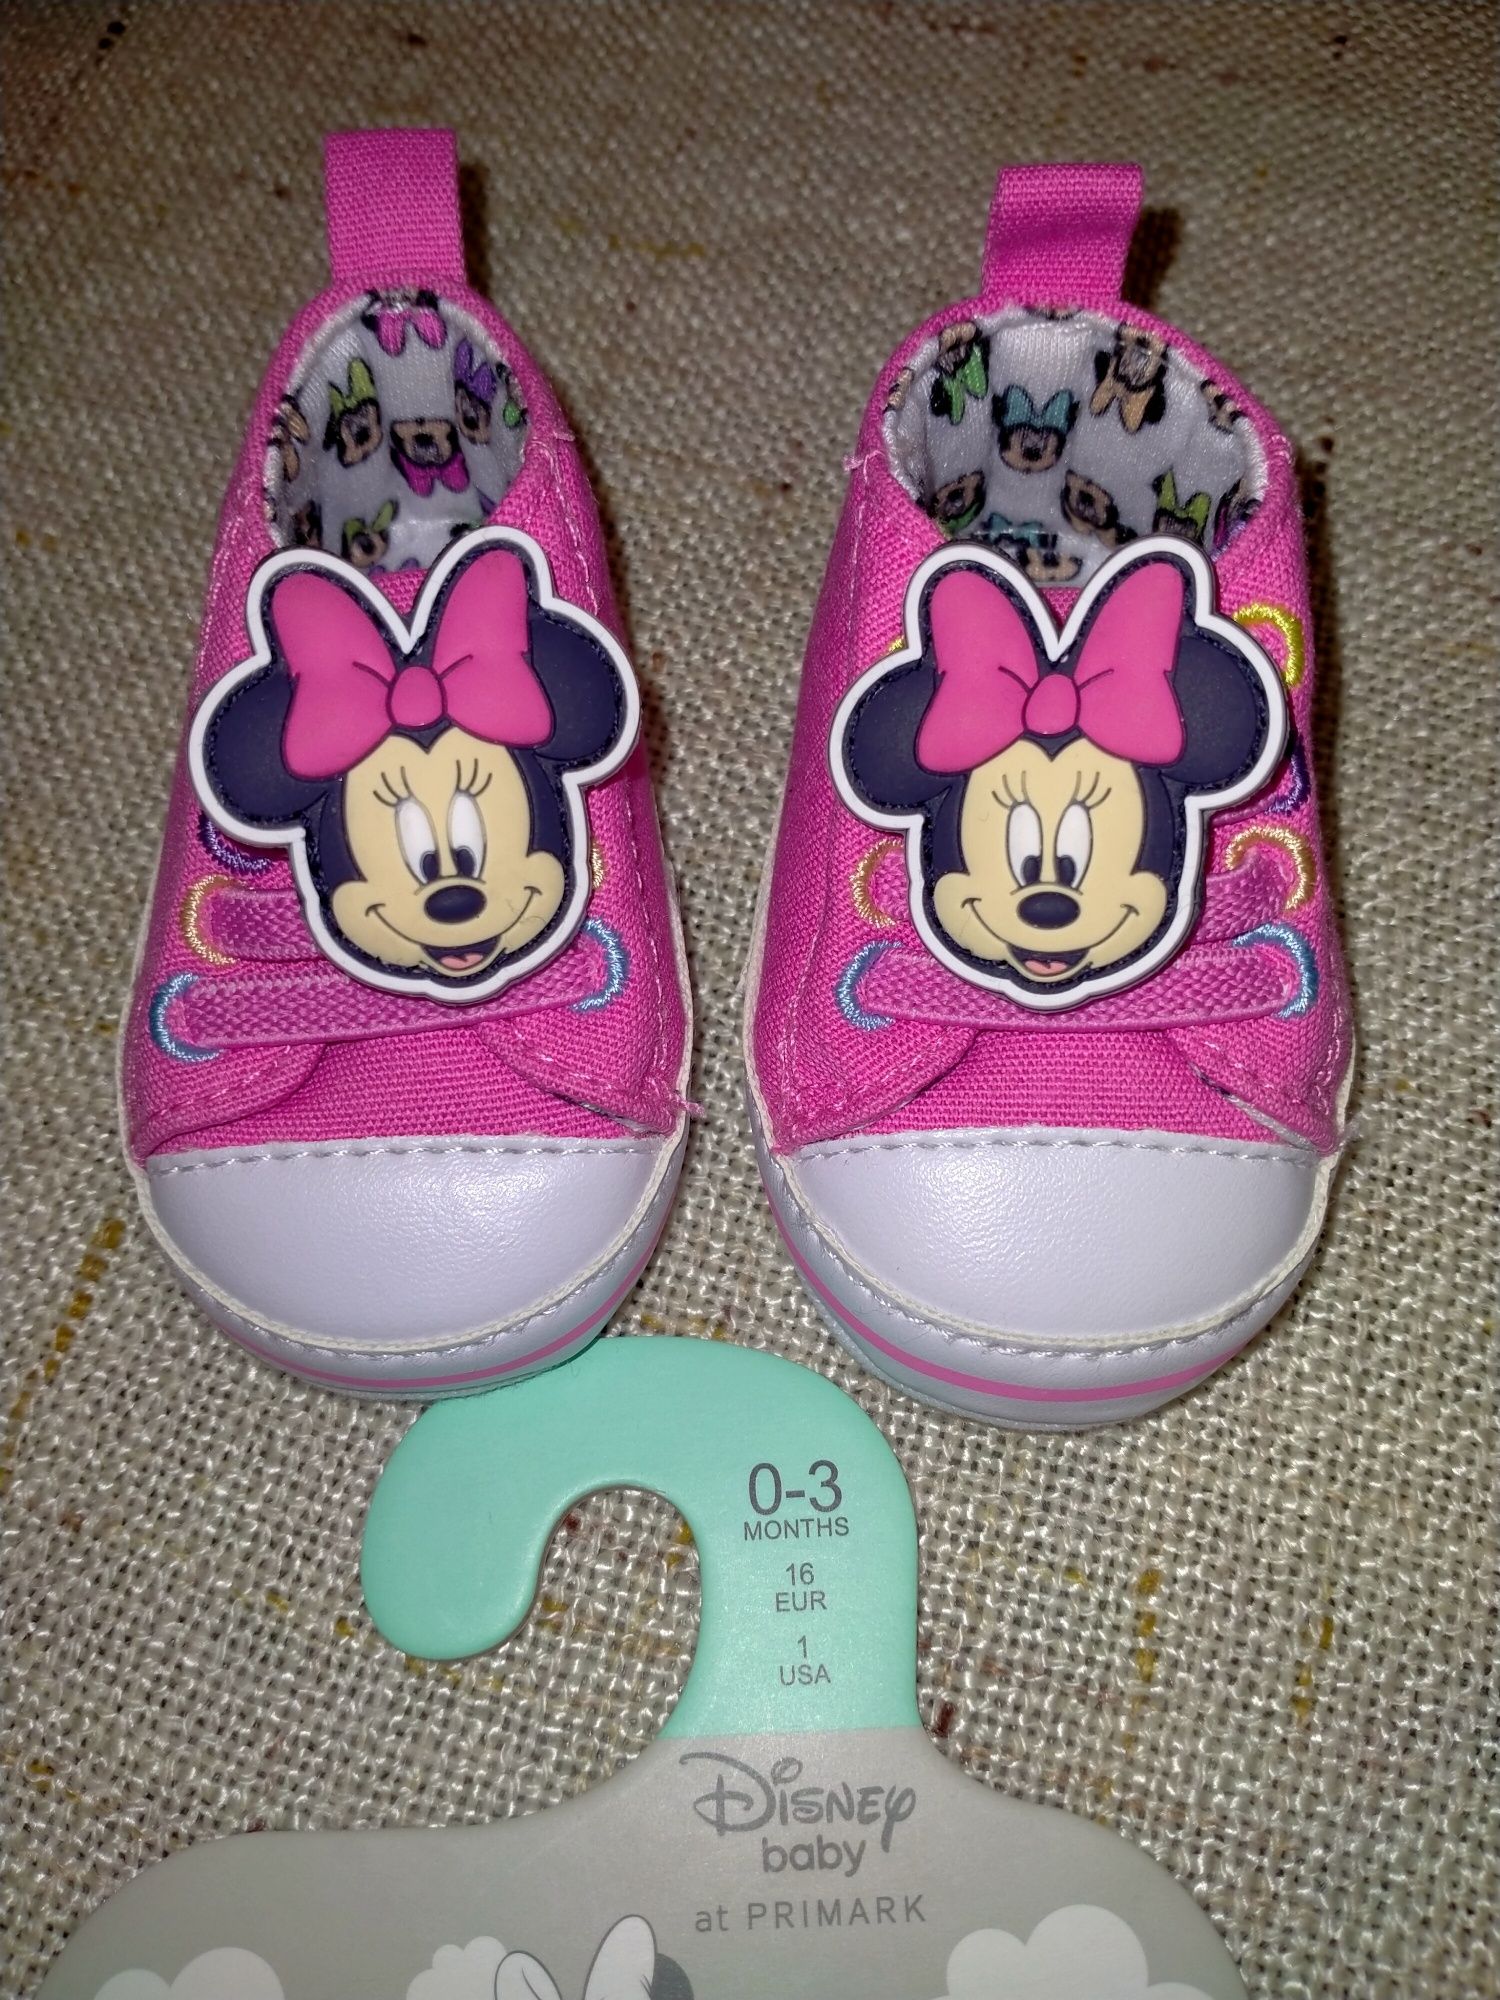 Новые кроссовочки Minnie на девочку 0-3 месяца